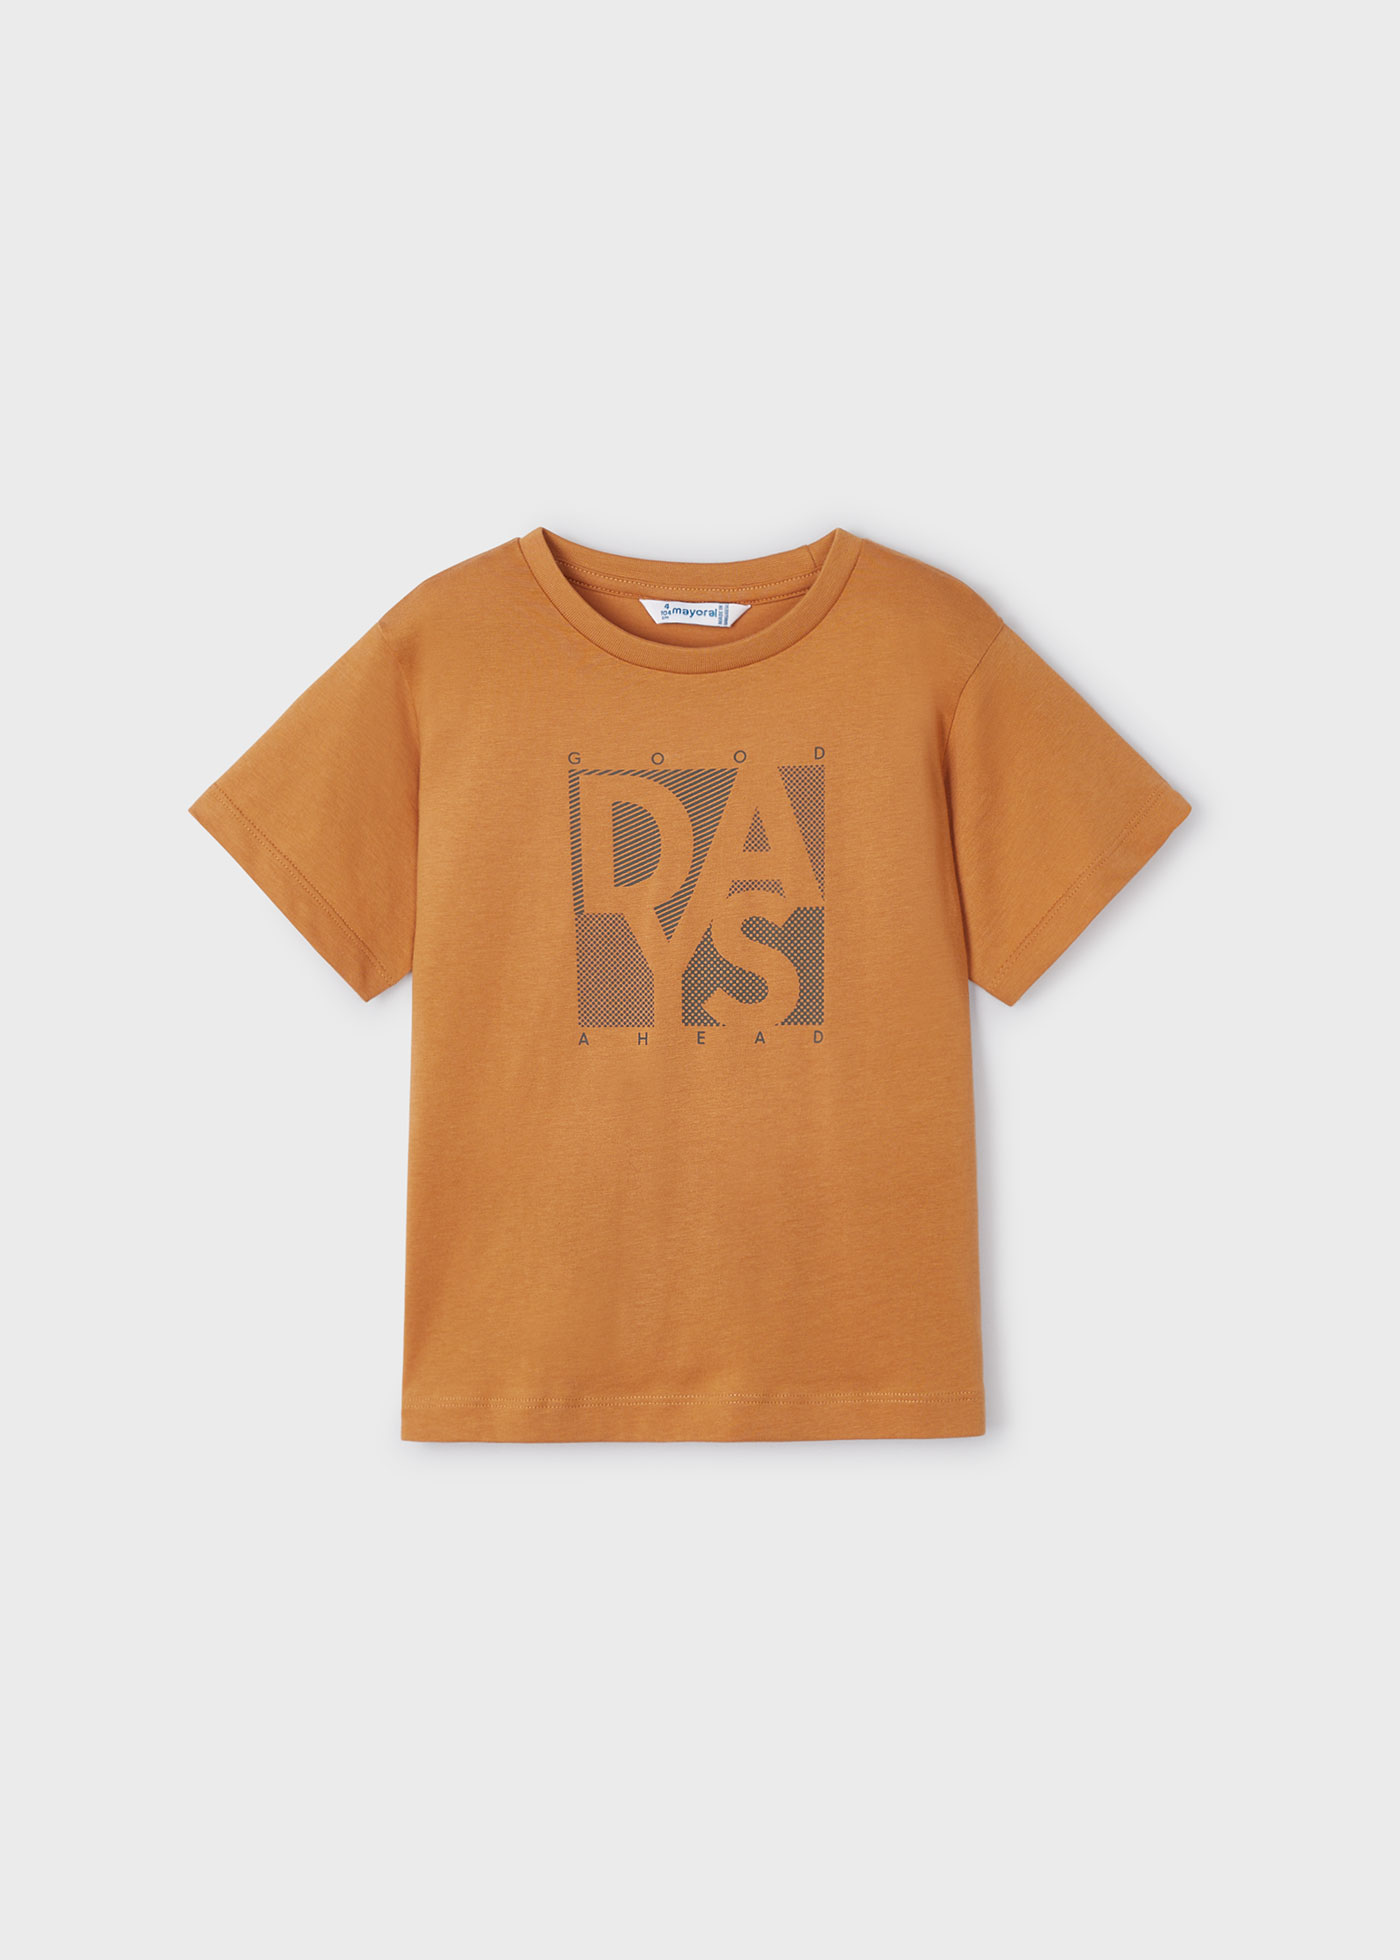 Camiseta Niño Dexter Ref 2 tallas de 3 a 12 años